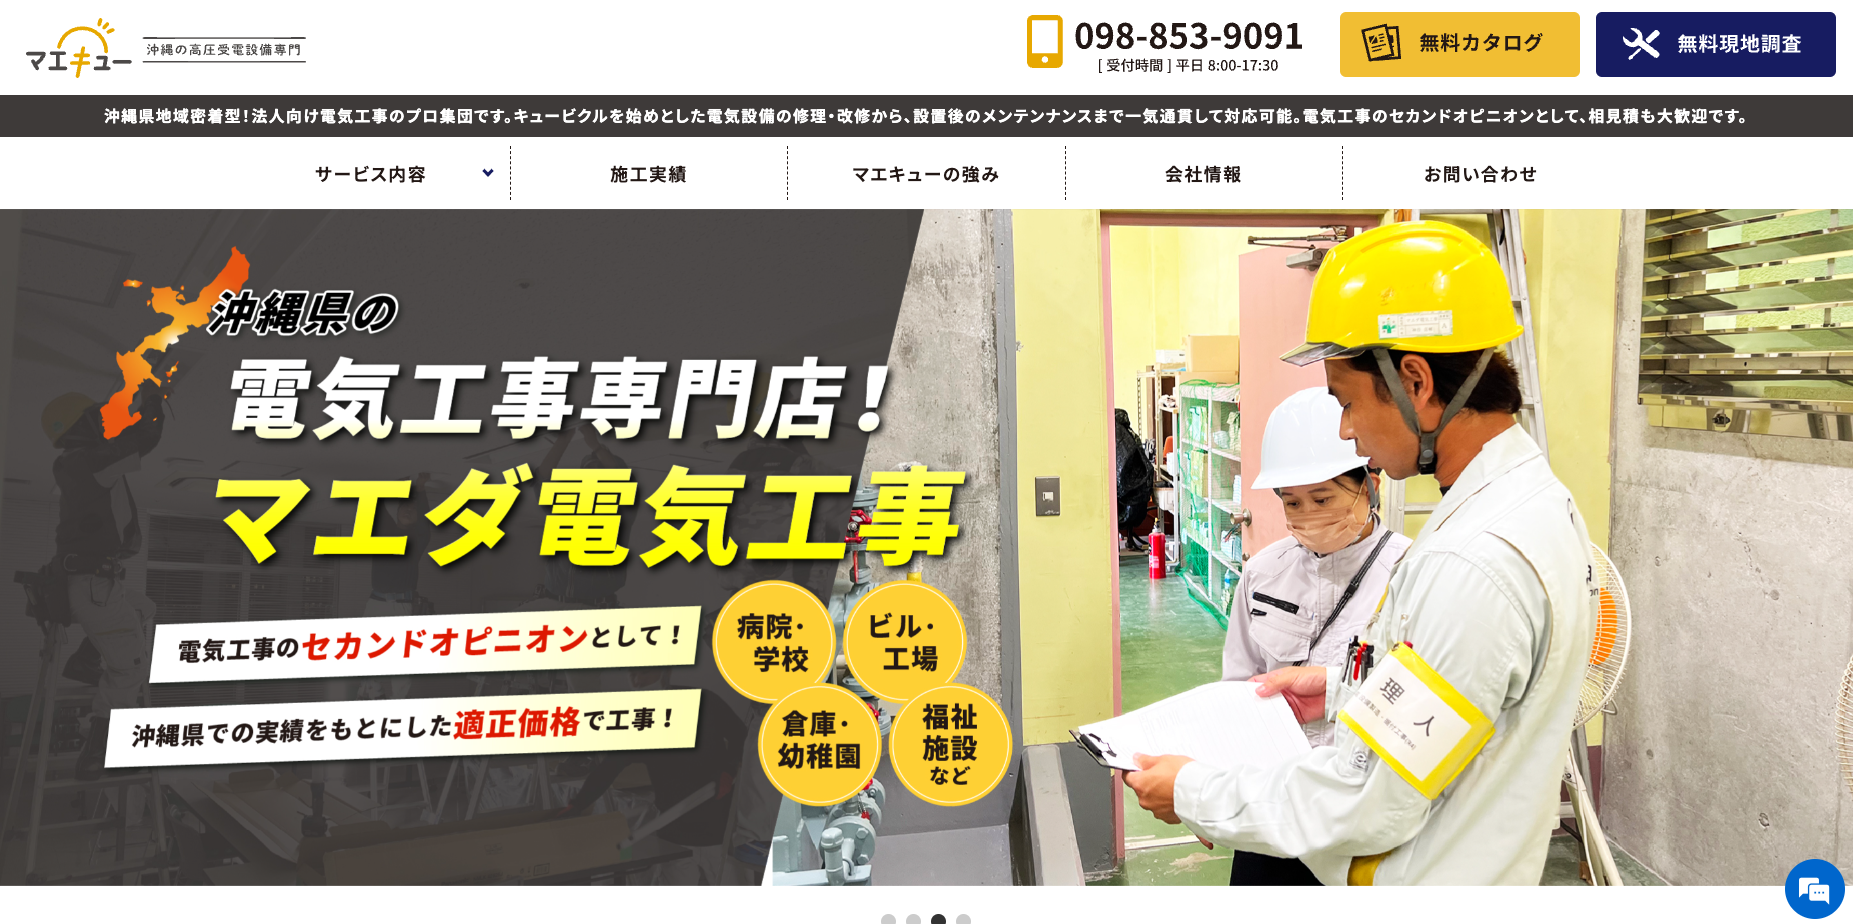 マエキュー｜沖縄県密着の電気工事のプロ集団